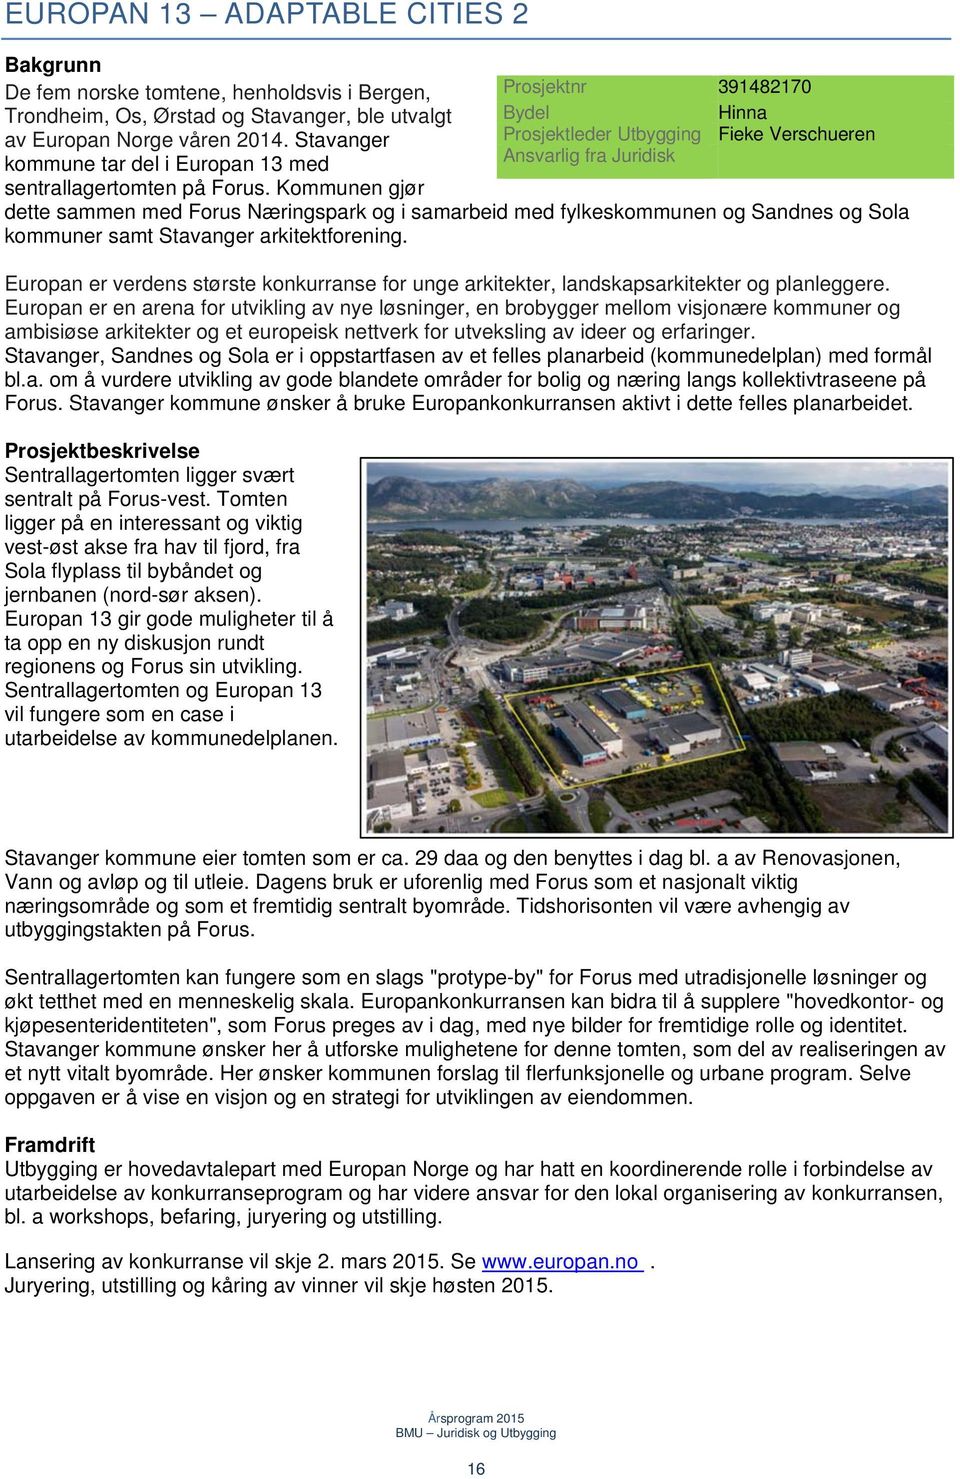 Kommunen gjør dette sammen med Forus Næringspark og i samarbeid med fylkeskommunen og Sandnes og Sola kommuner samt Stavanger arkitektforening.